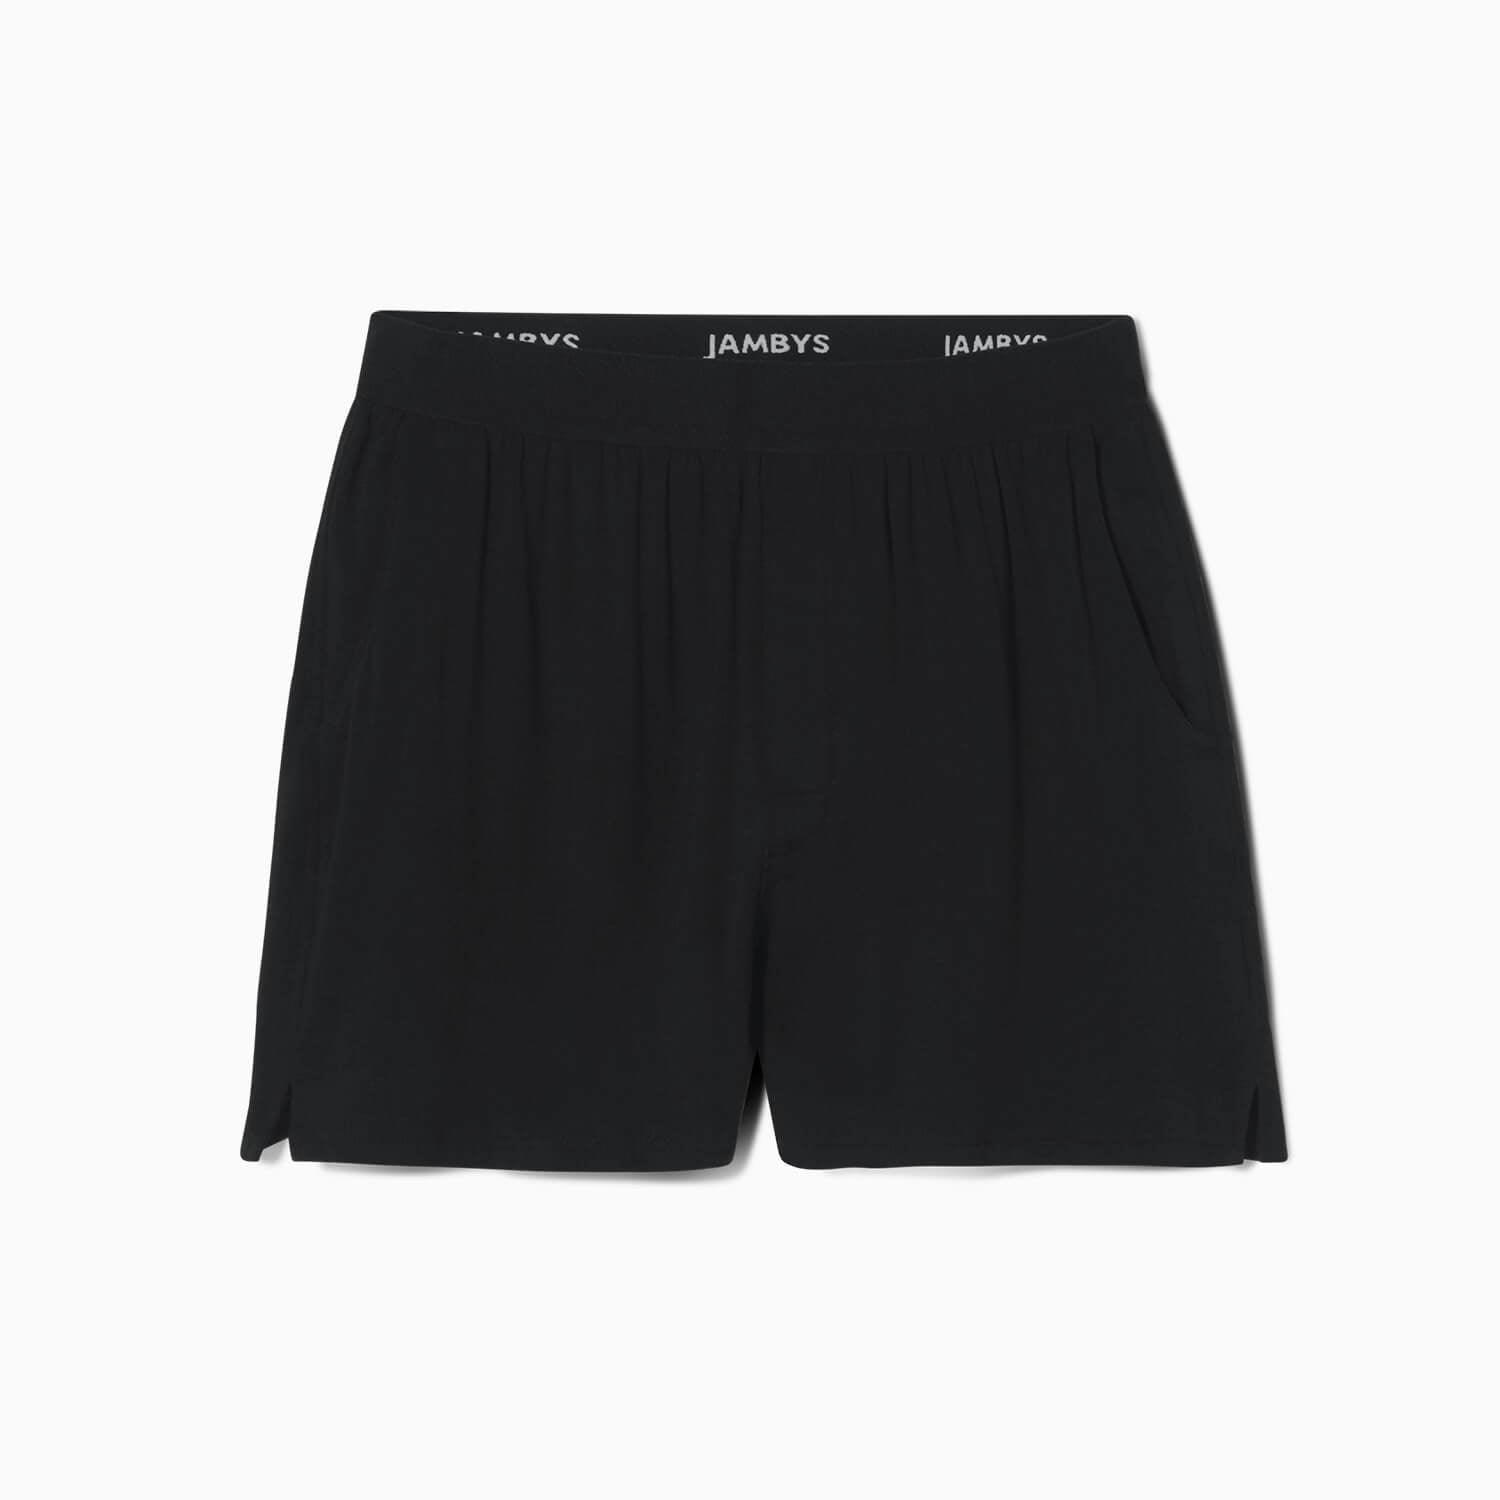 XS Mint Boxer Shorts - 30 Waist Sleek Fit